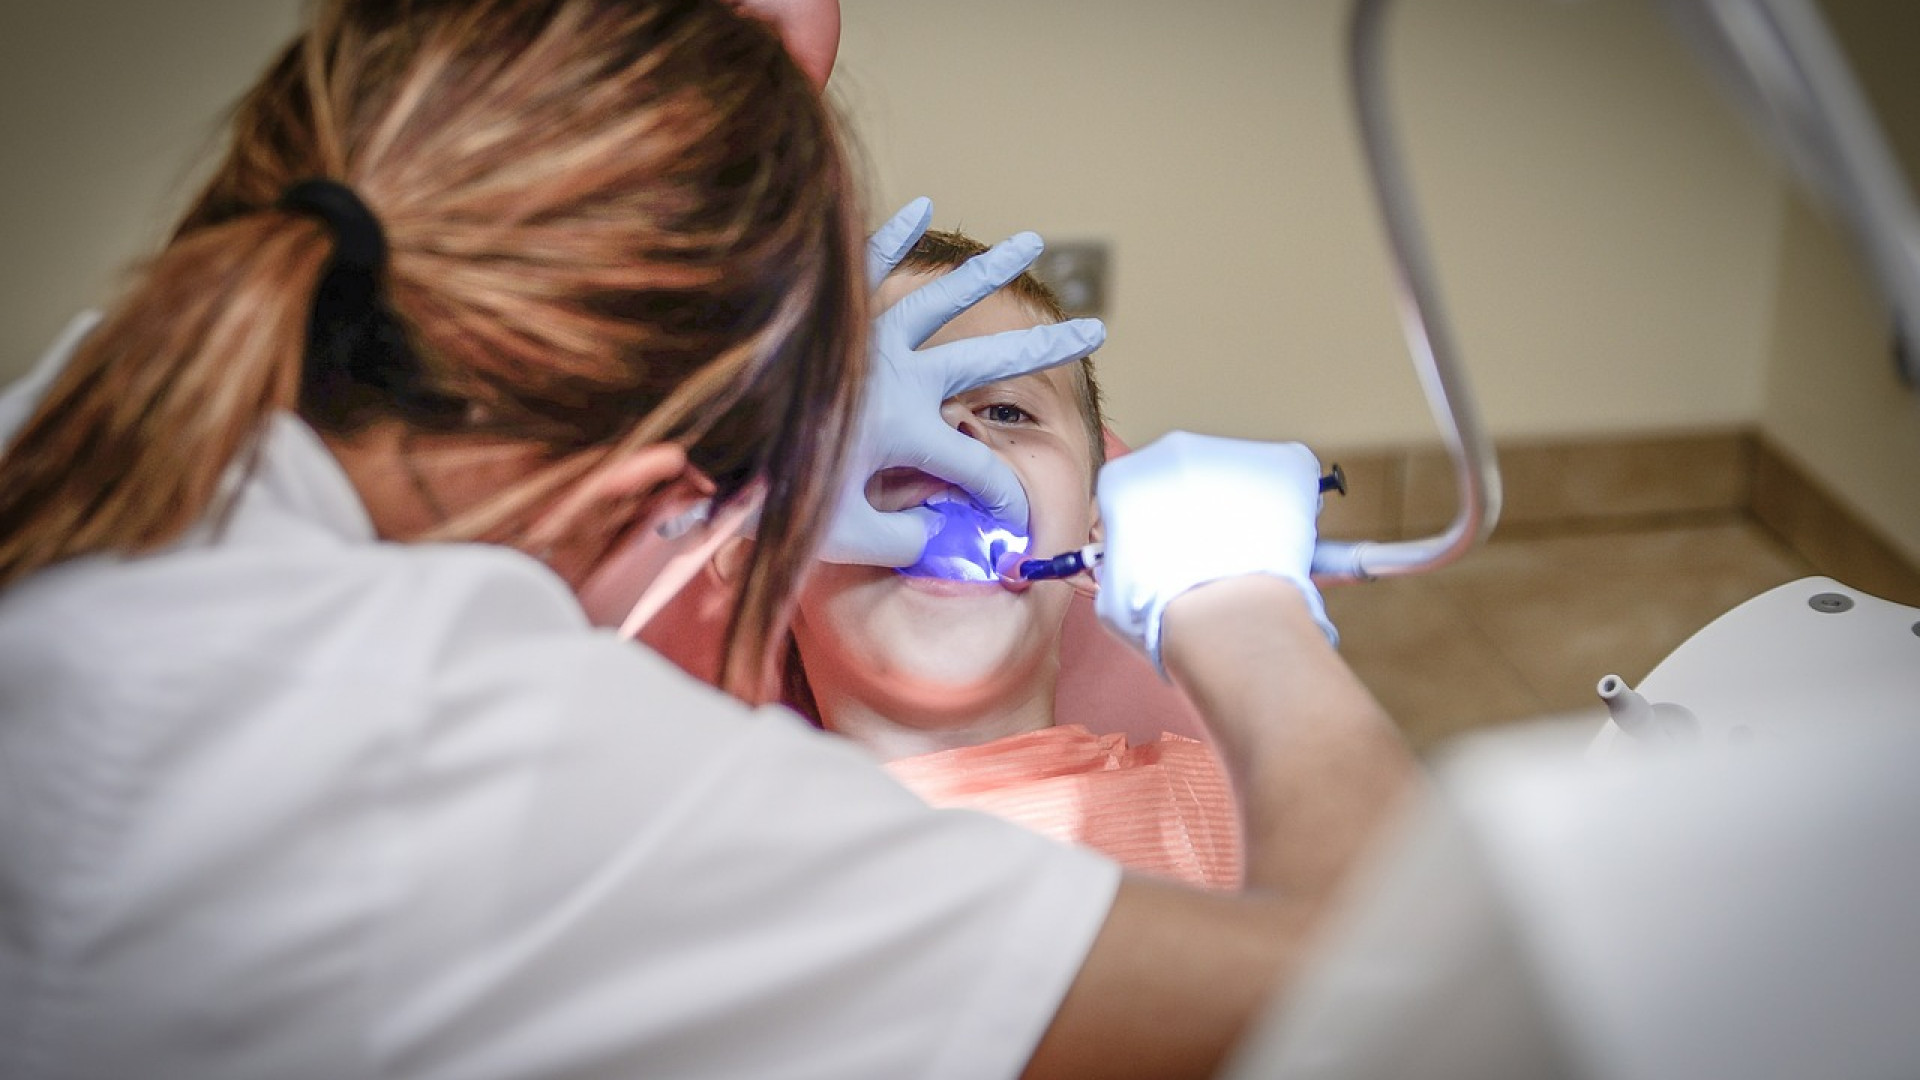 Comment bénéficier d'une urgence dentaire ?